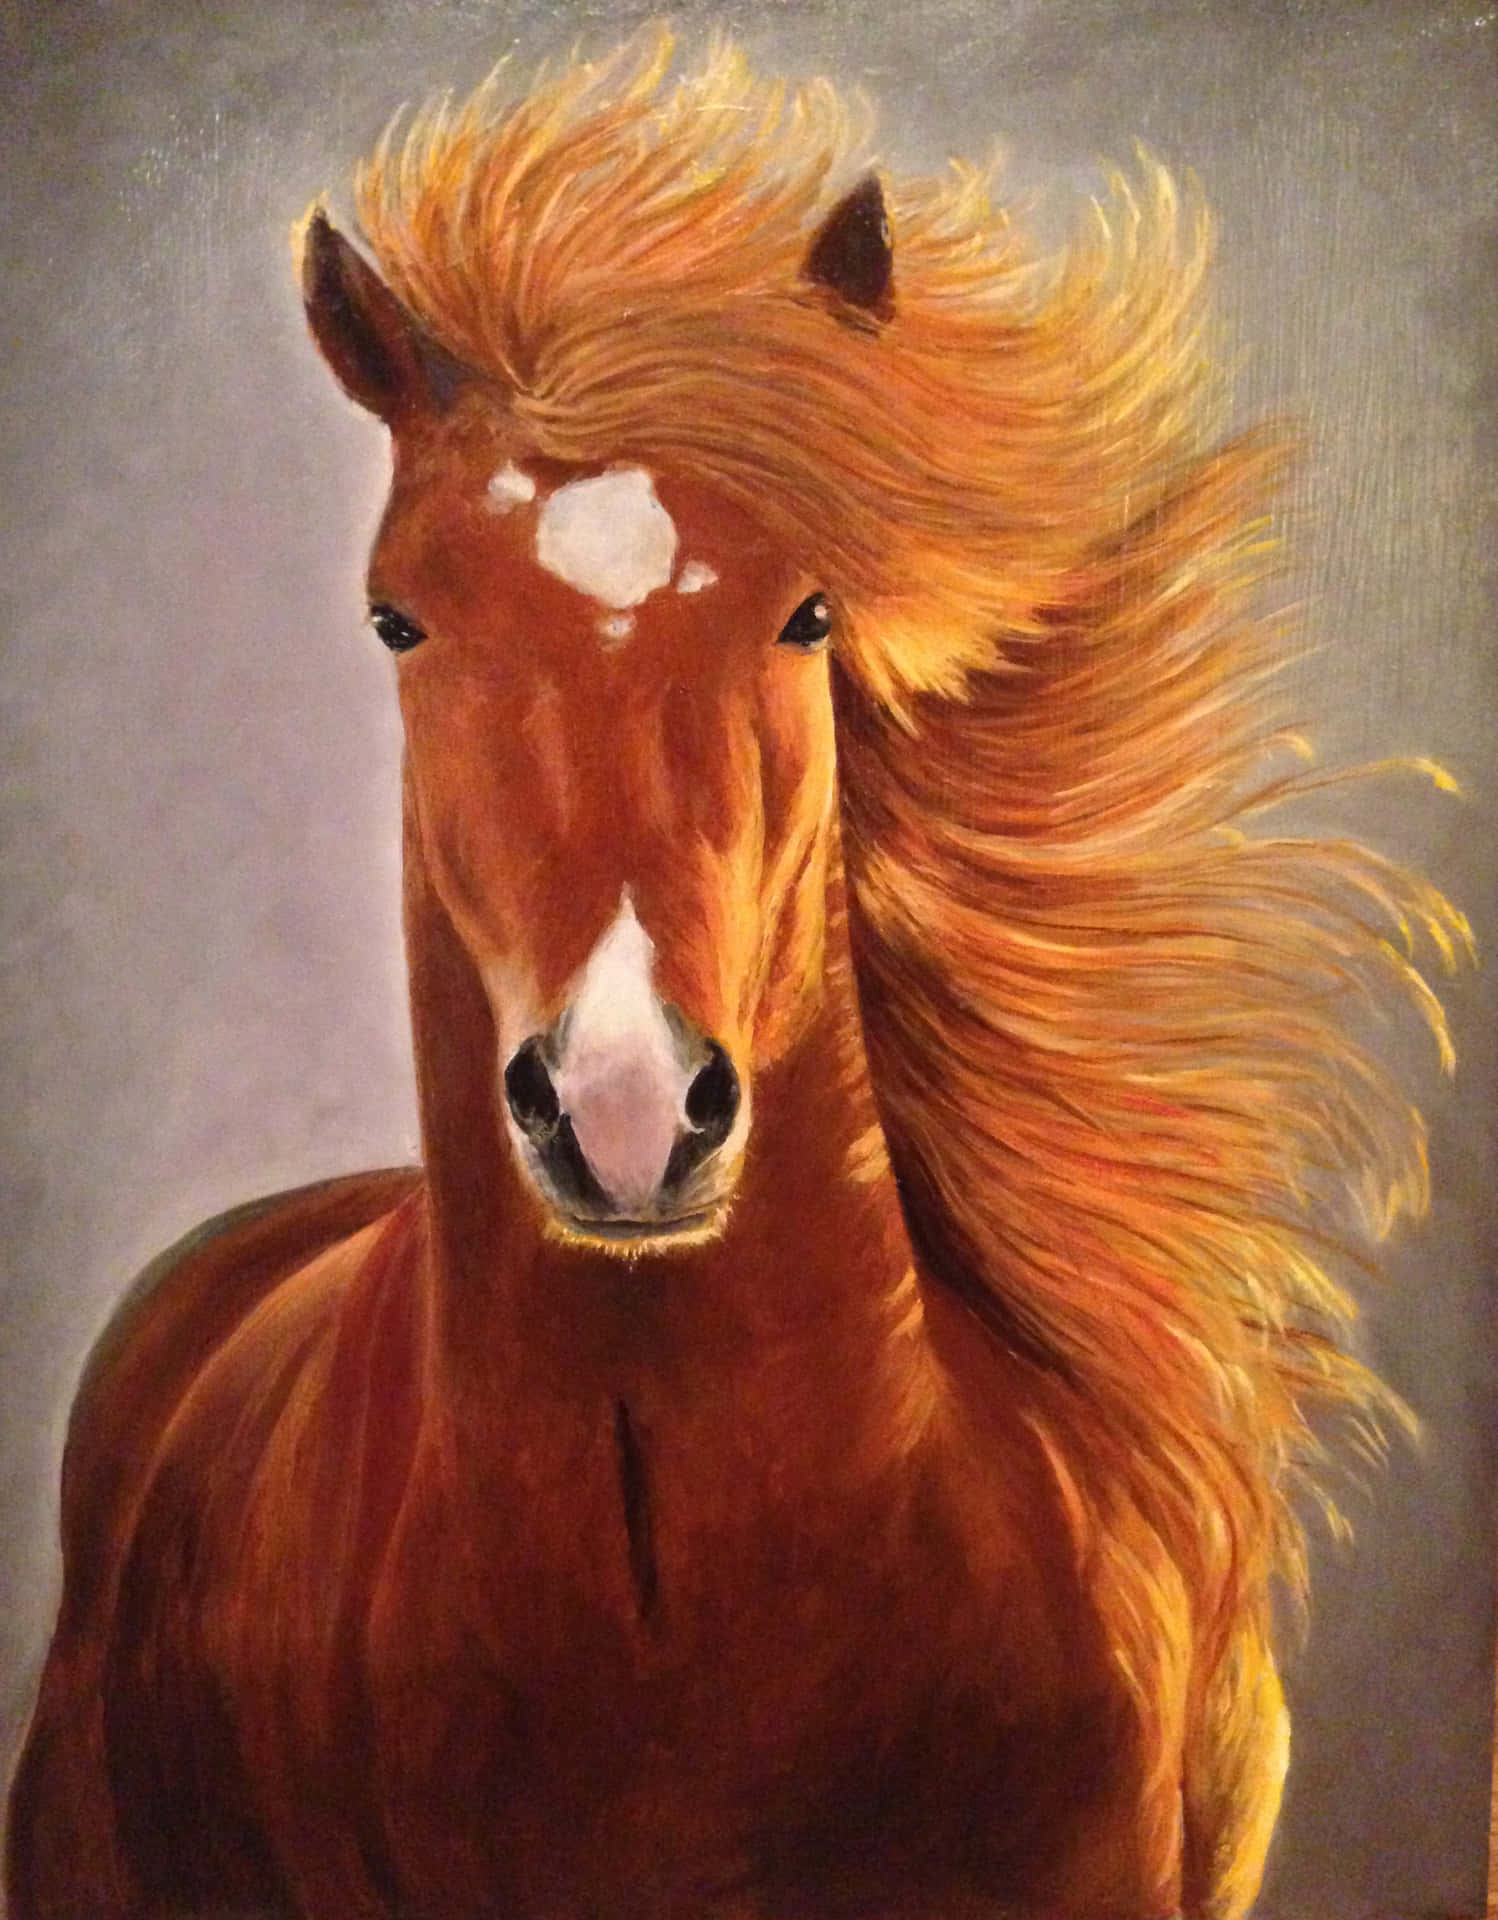 Bellissimaimmagine Di Un Dipinto Raffigurante Un Magnifico Cavallo Marrone.